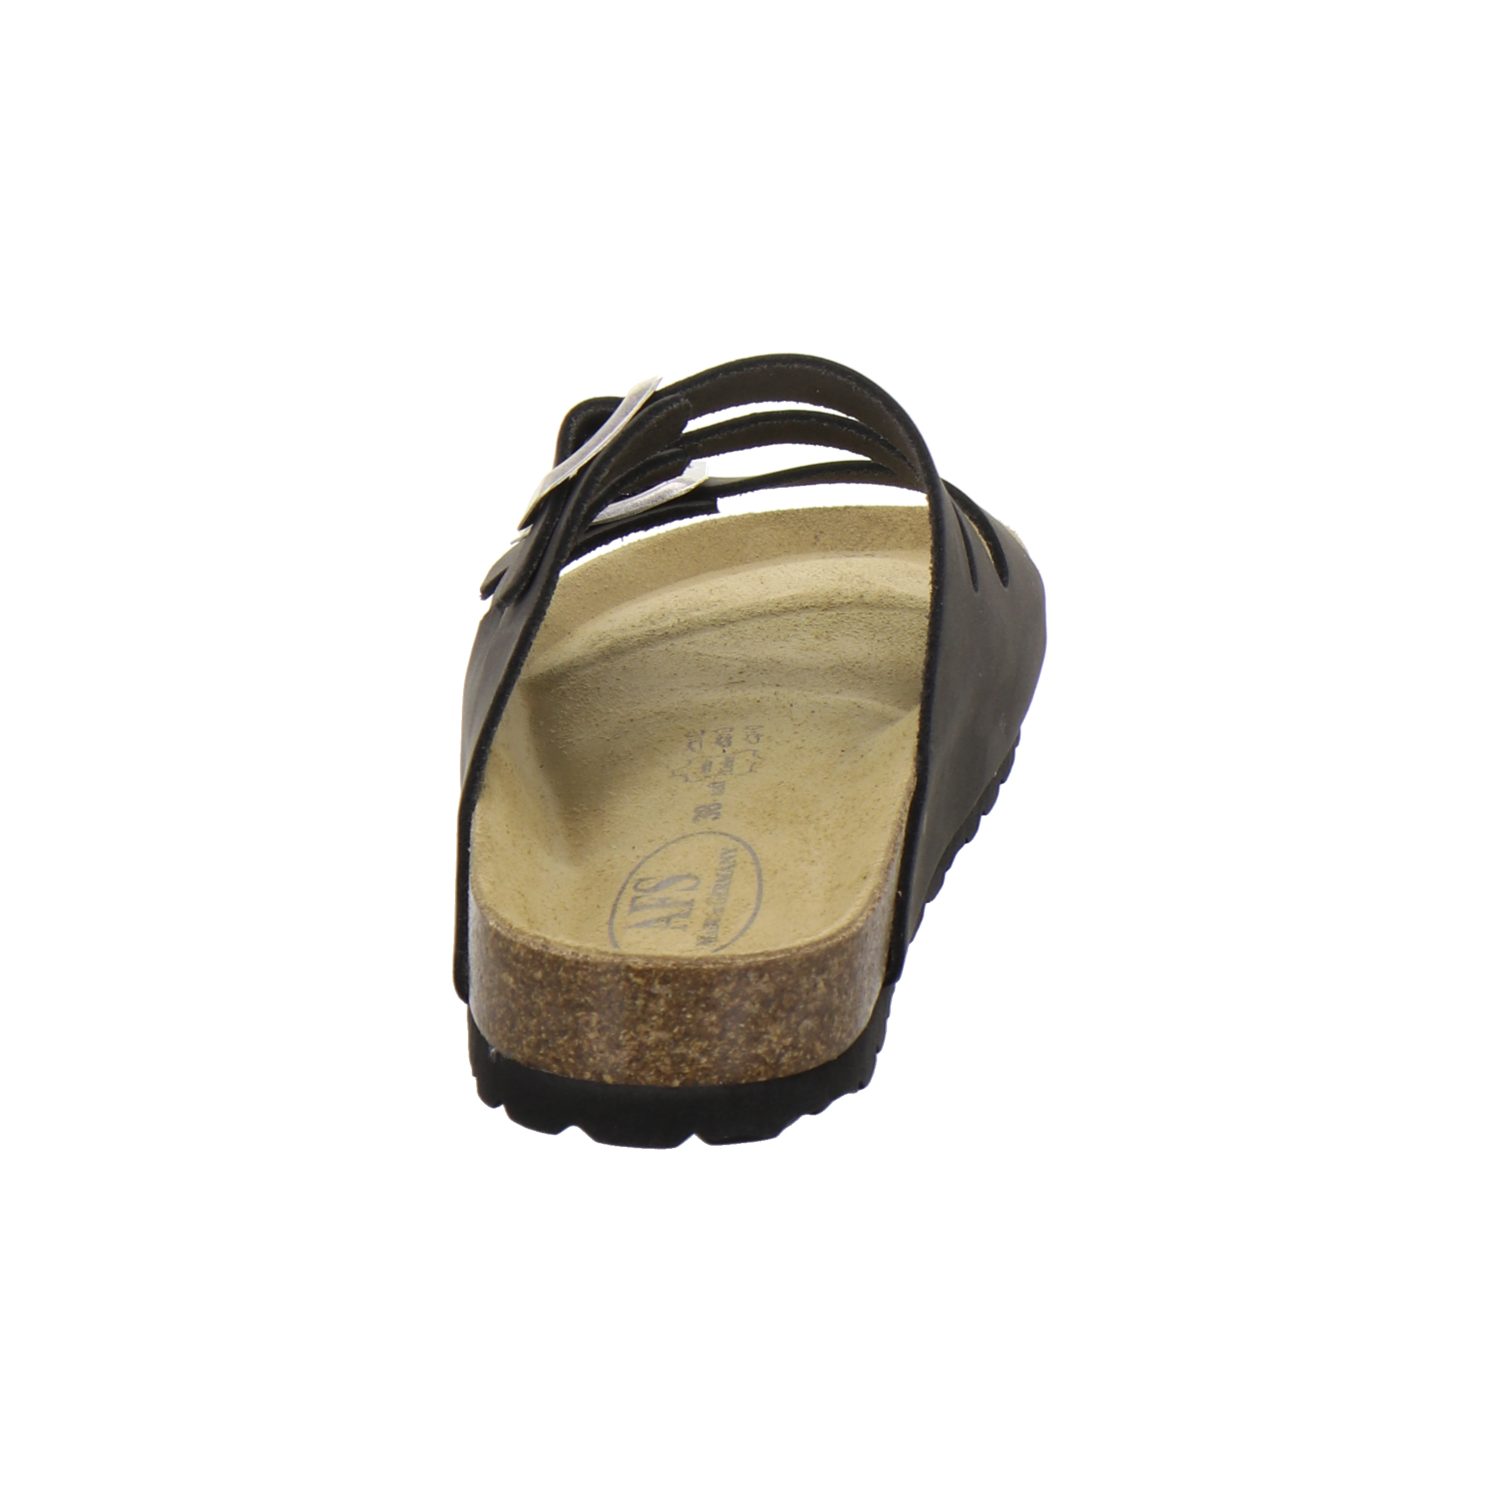 AFS-Schuhe 2133 für aus Fußbett, Damen in Germany Made Pantolette stone Leder mit